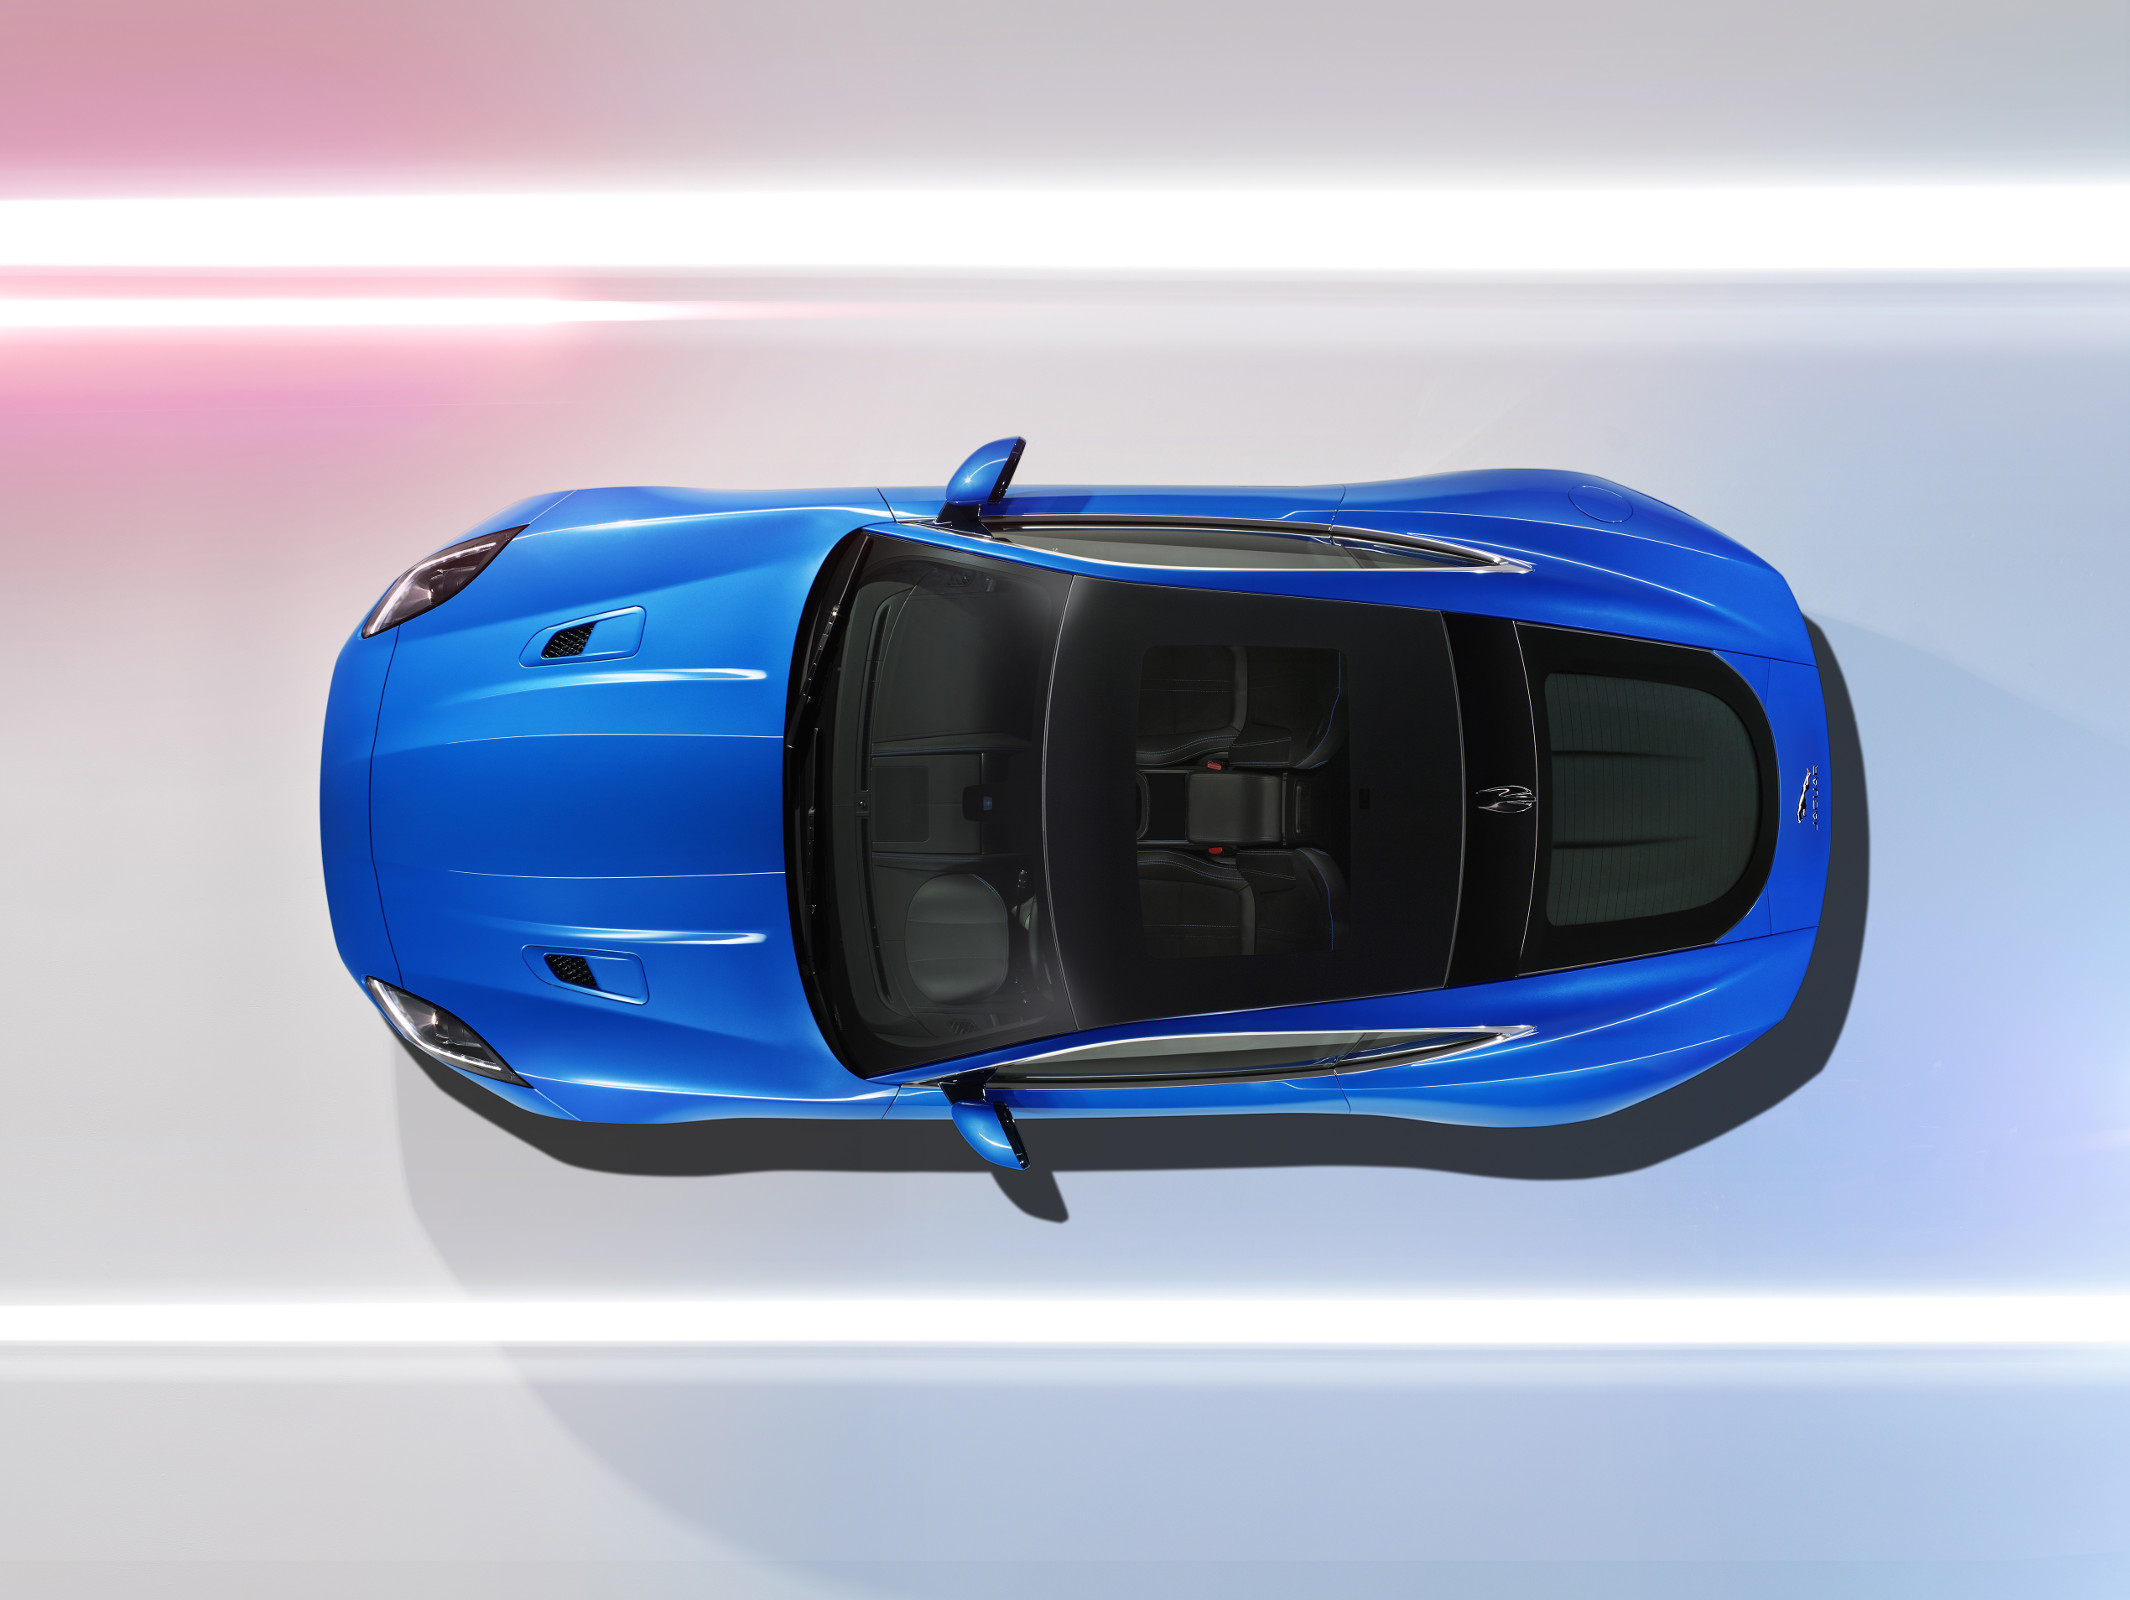 2016 Jaguar F-TYPE British Design Edition